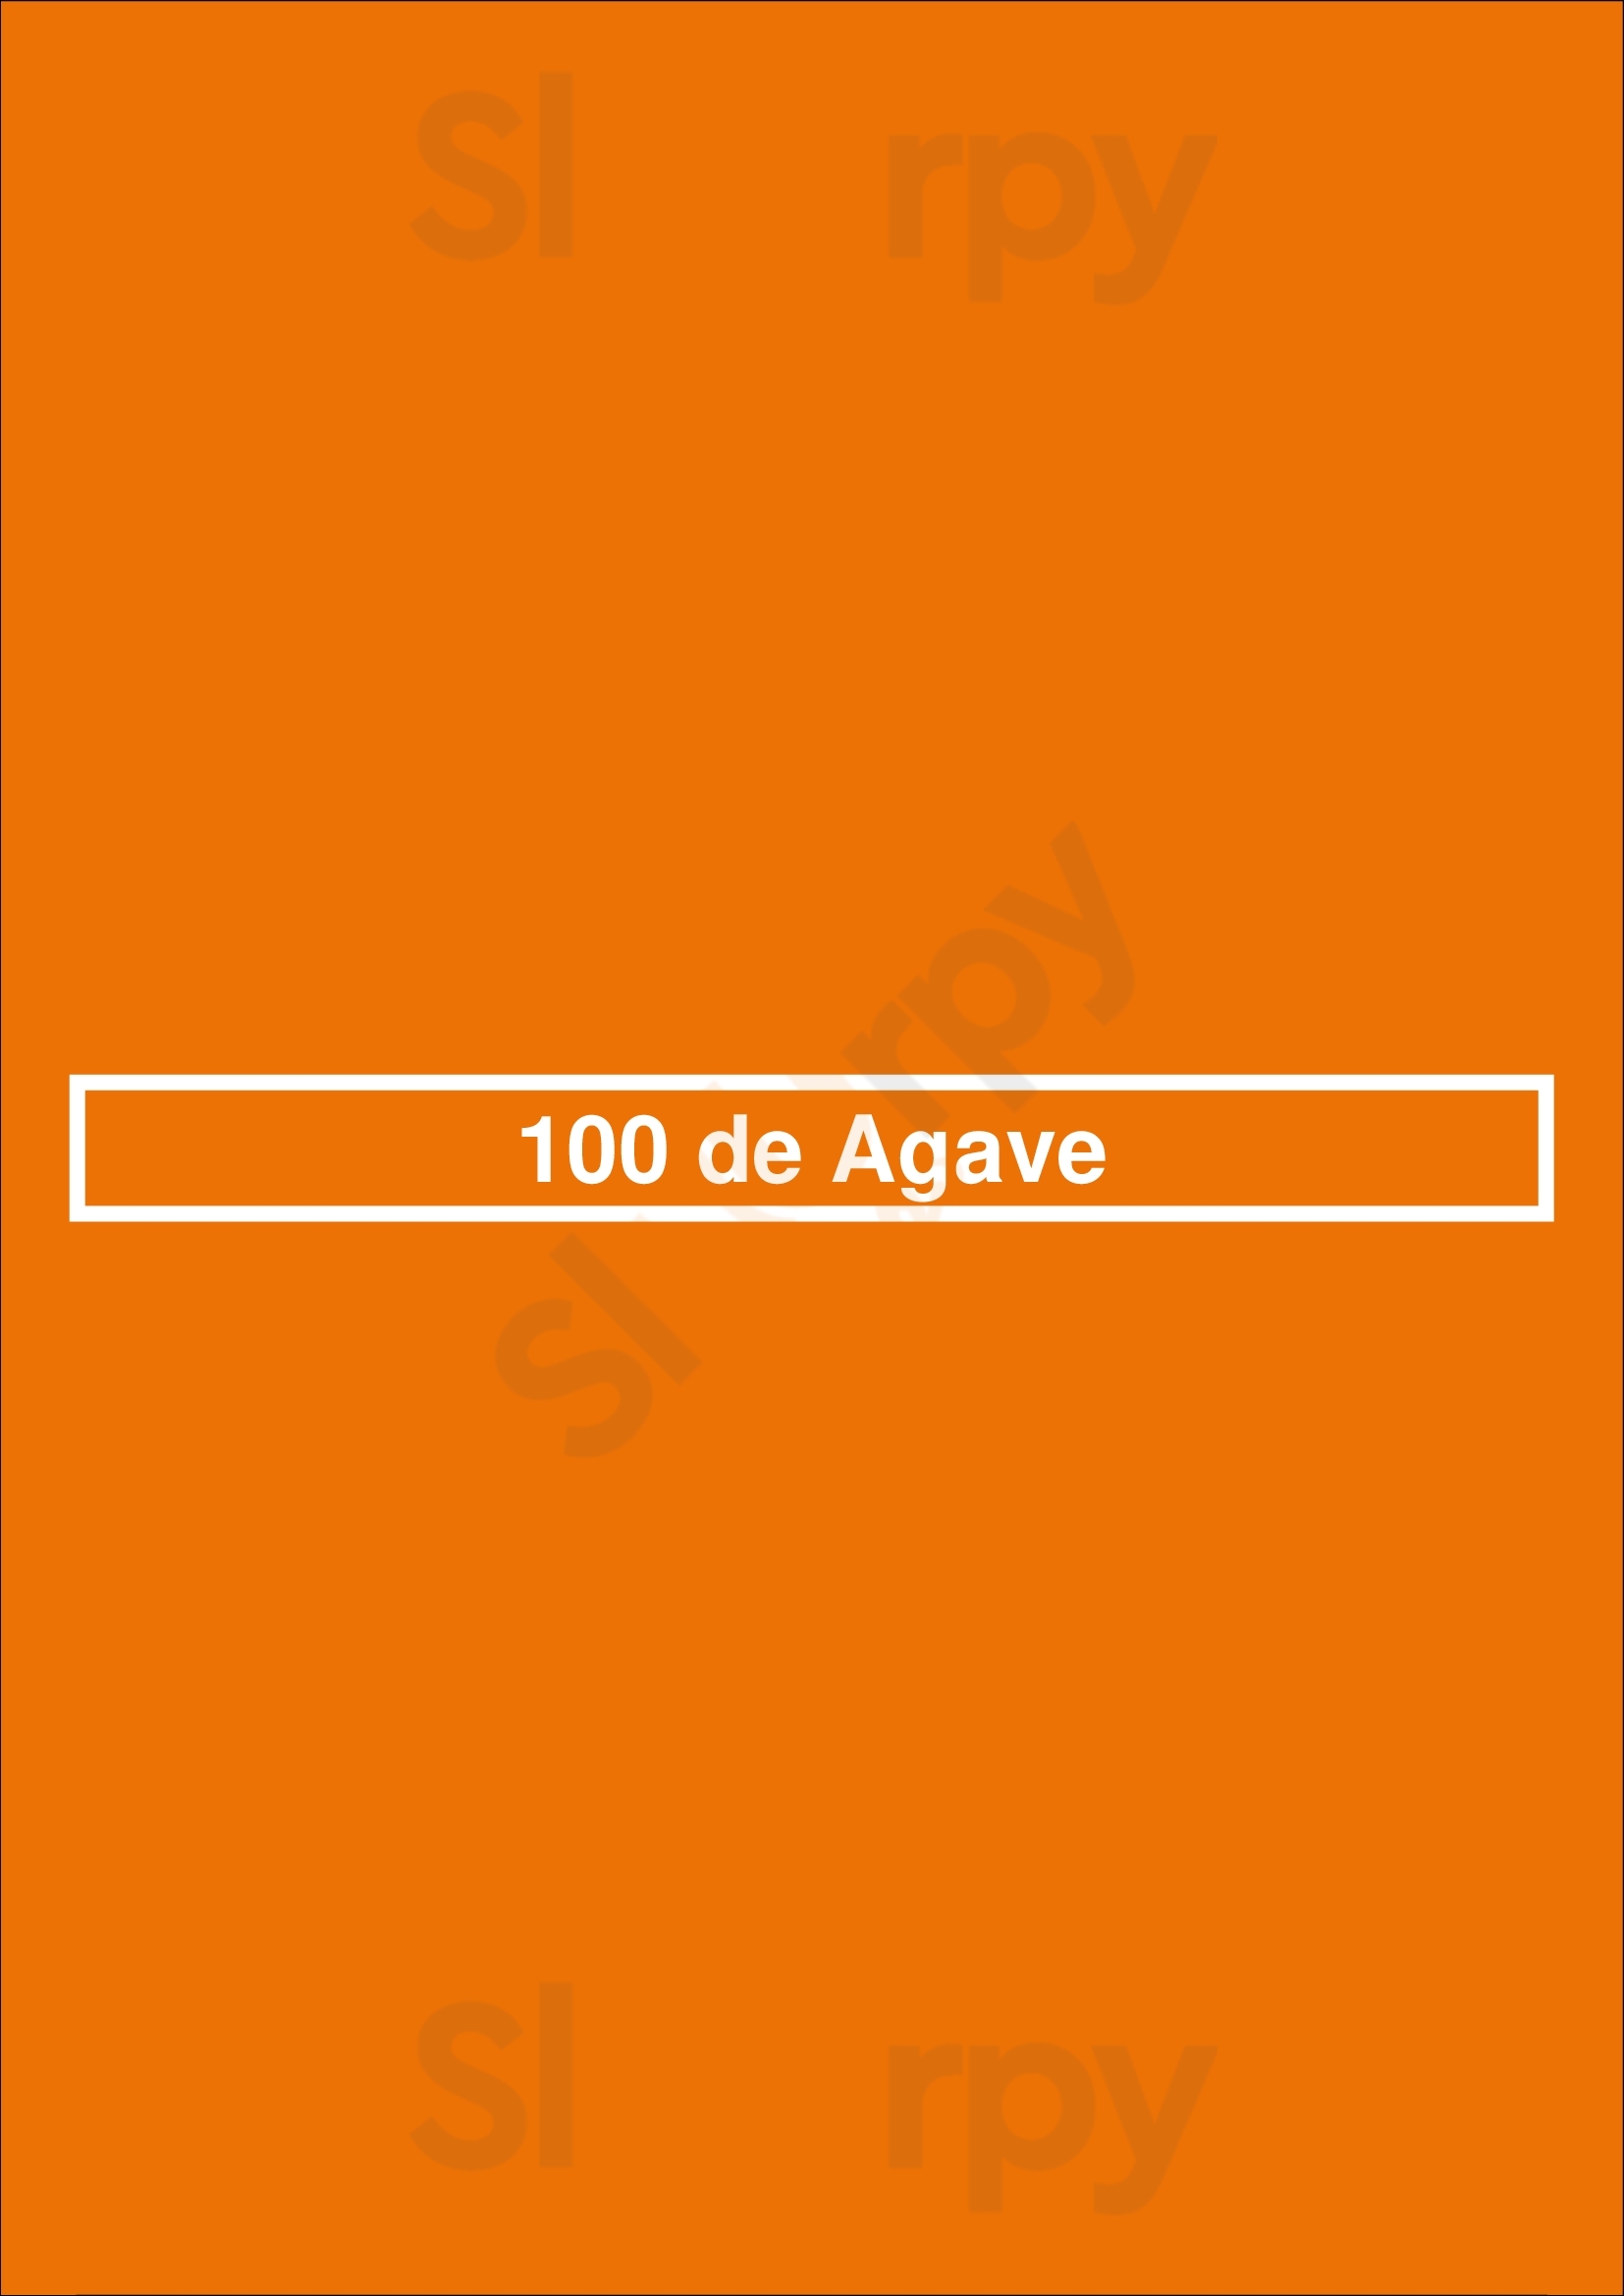 100 De Agave Denver Menu - 1